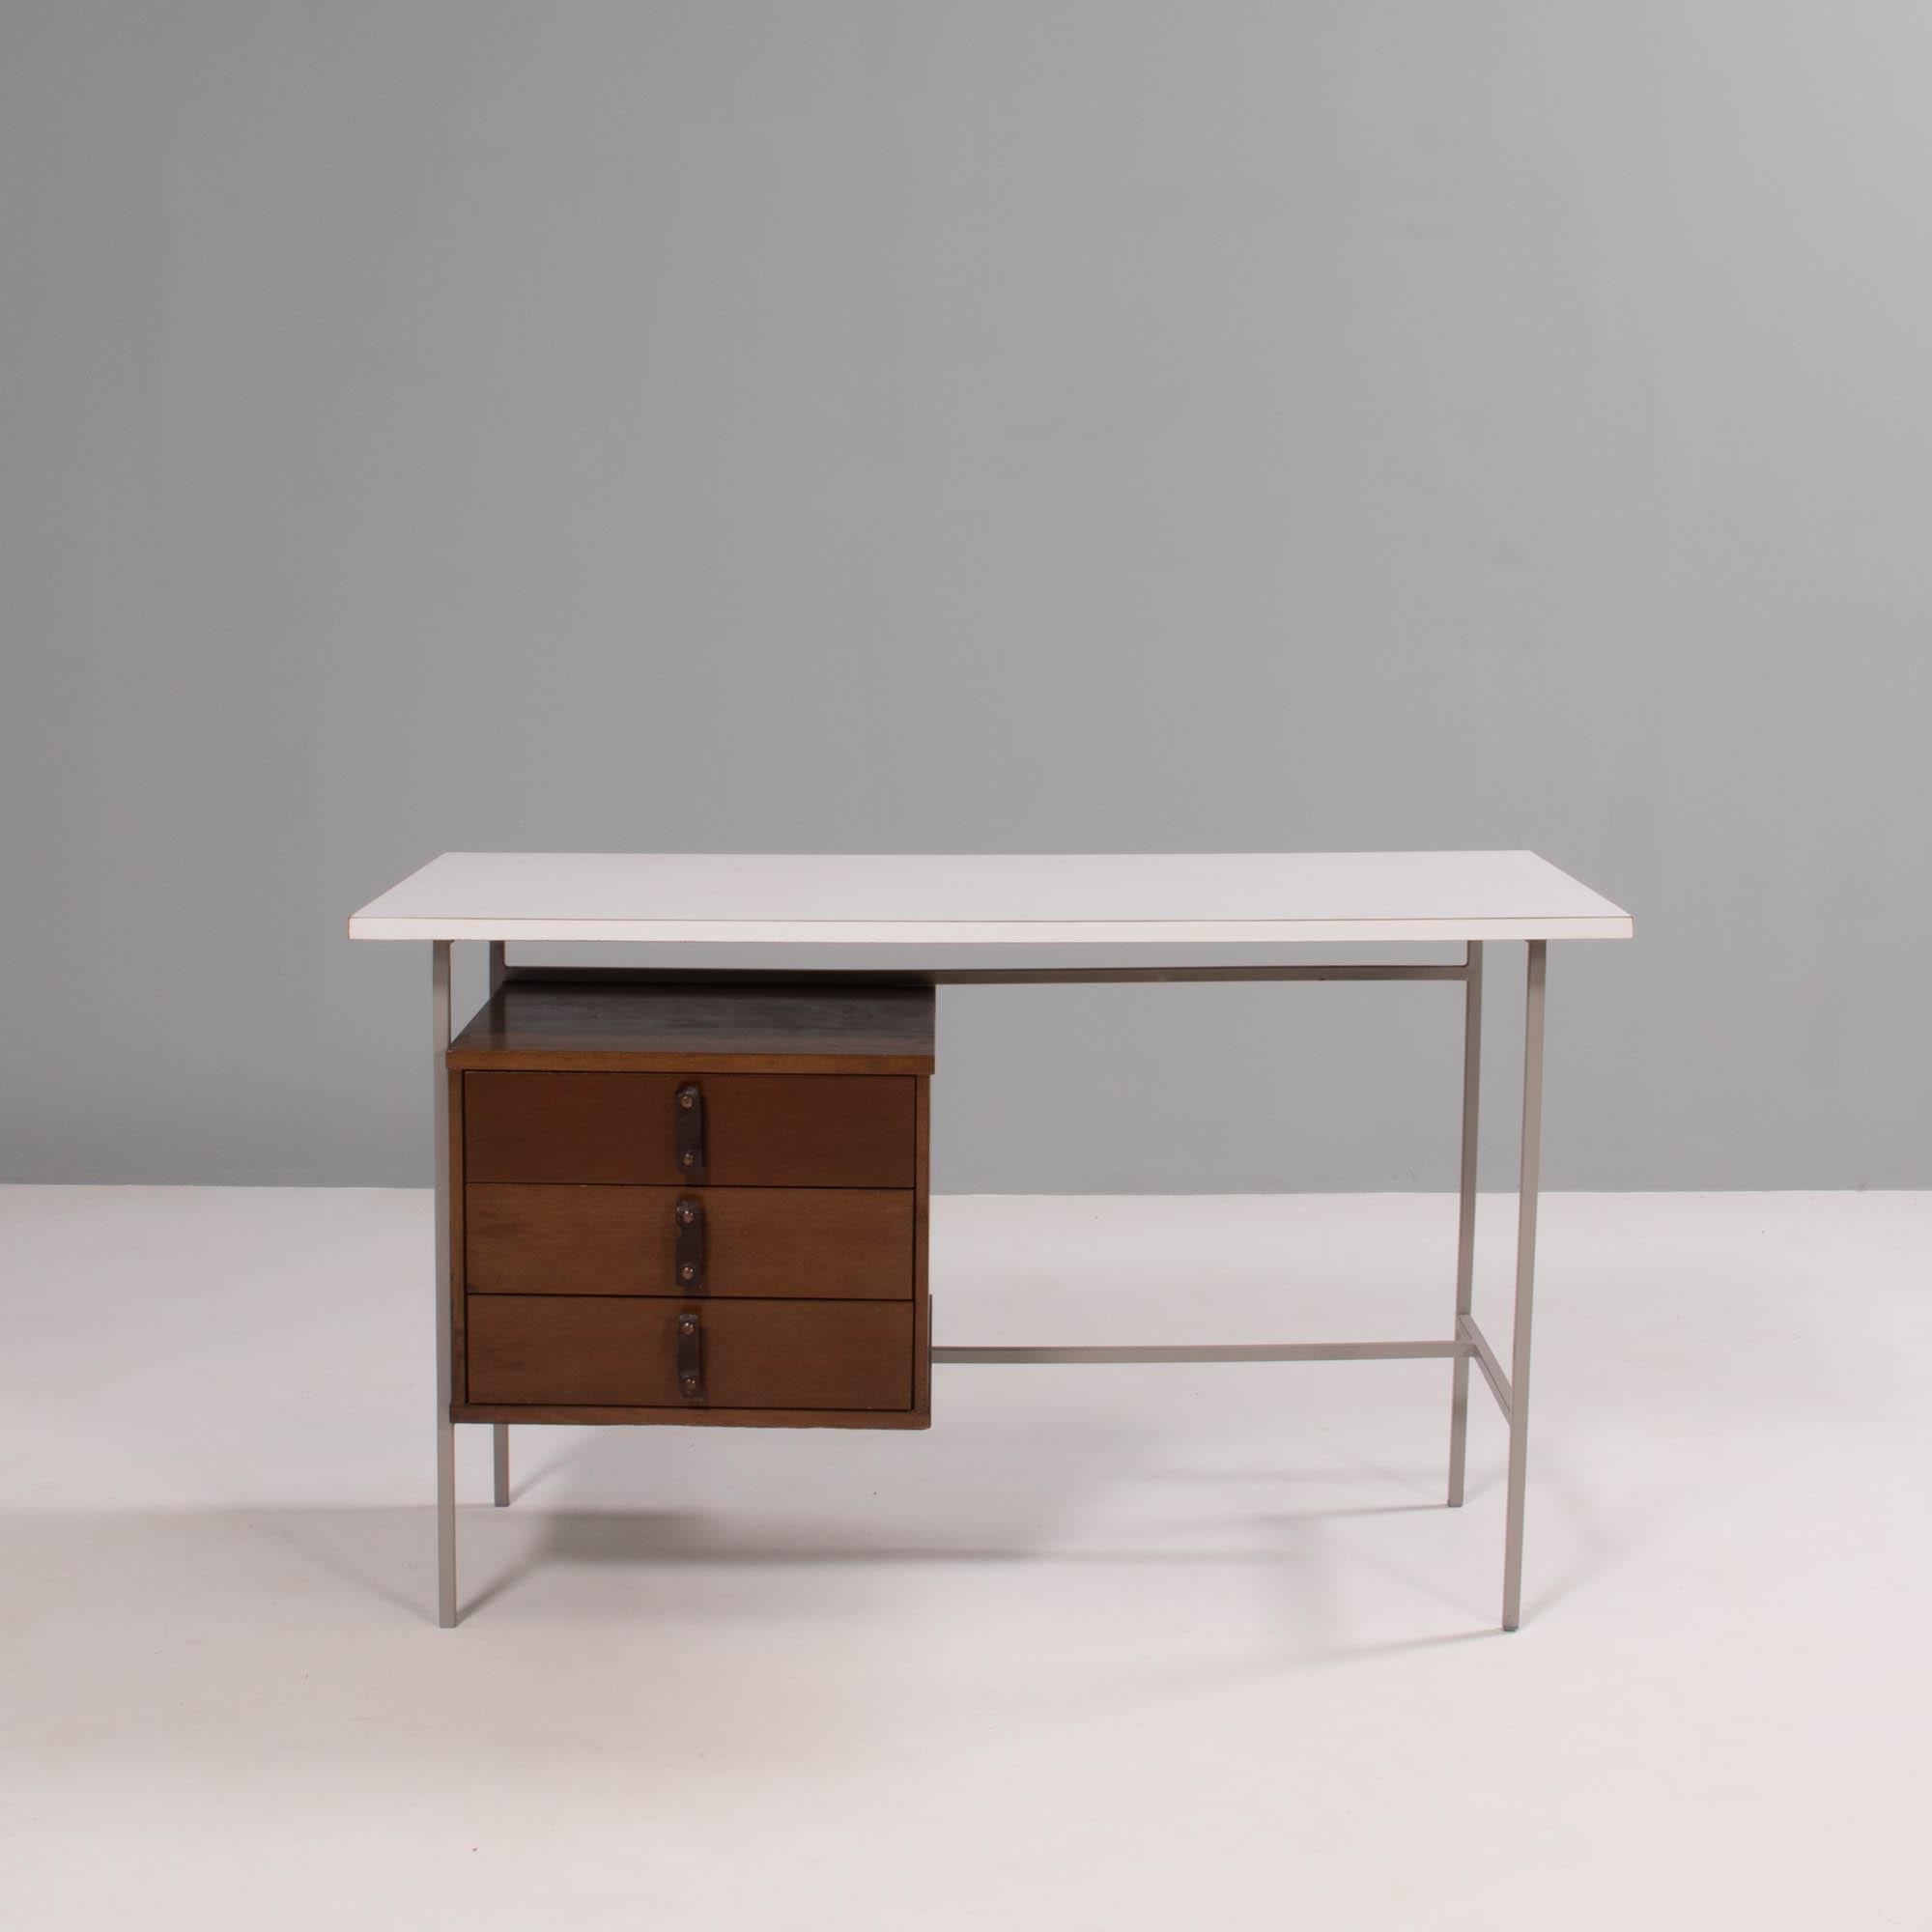 Conçu et fabriqué par Knoll & Drake, ce bureau des années 1950 est à la fois pratique et intemporel.

Construit avec des pieds en métal, le bureau est doté d'un plateau en Formica blanc et d'un seul caisson en bois de noyer.

Trois tiroirs